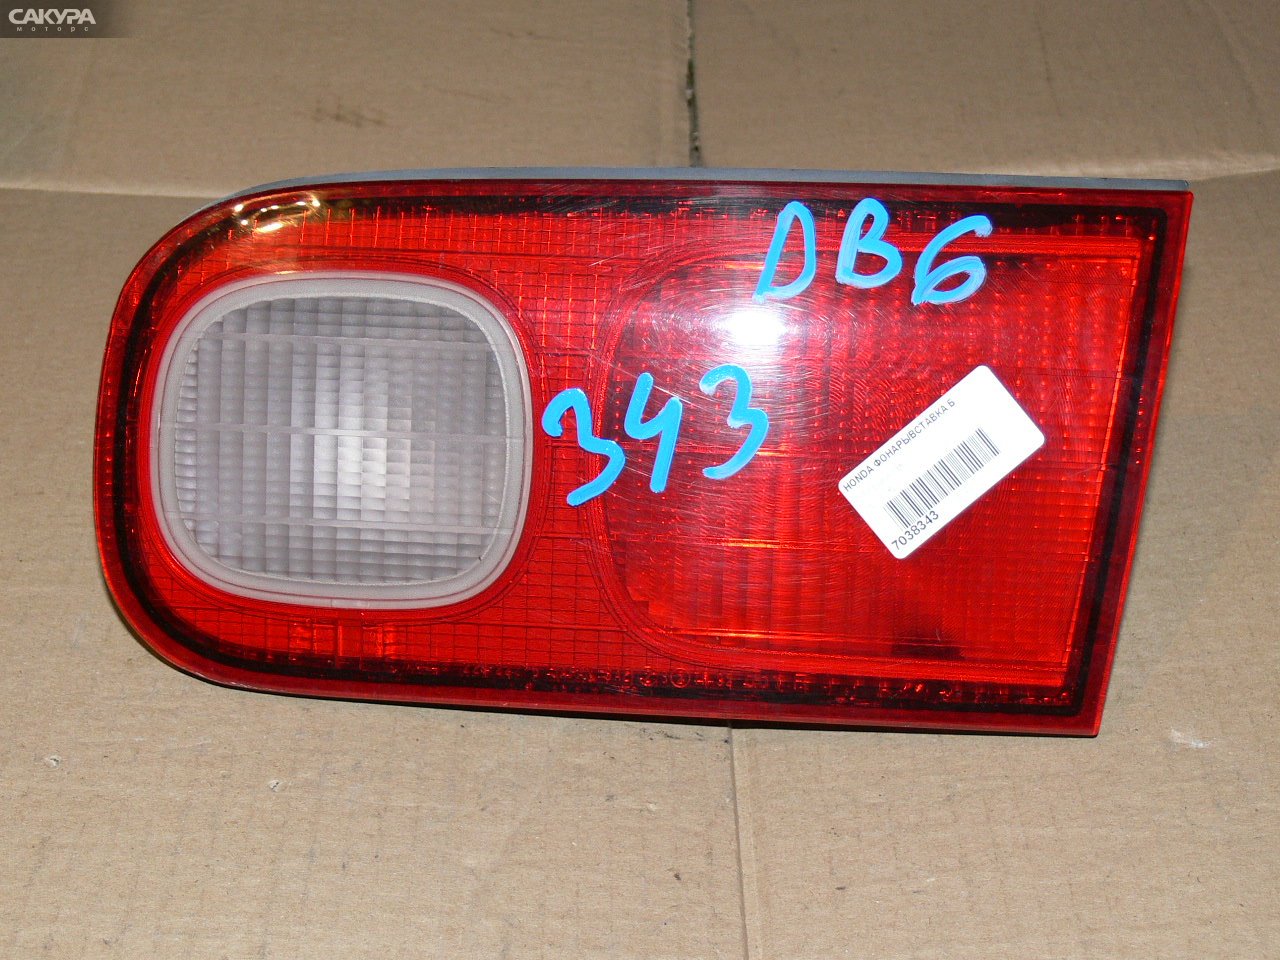 Фонарь вставка багажника правый Honda Integra DB6 226-22235: купить в Сакура Иркутск.